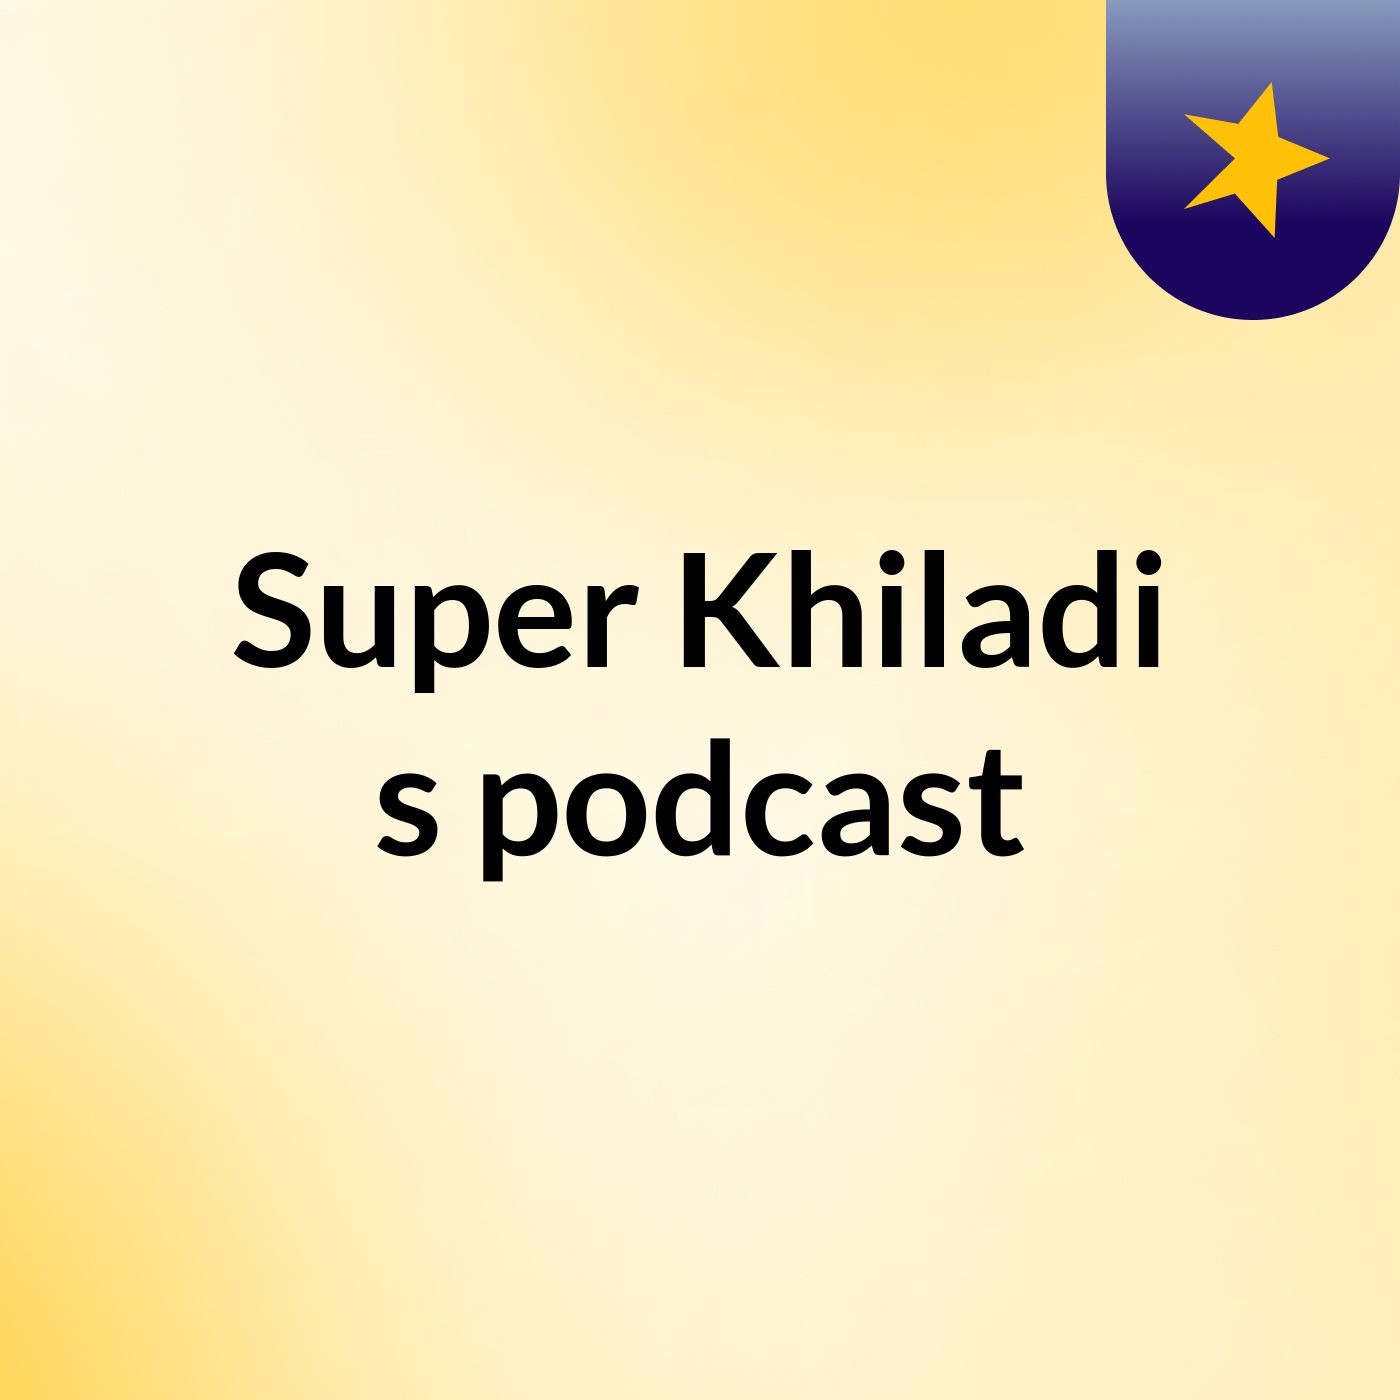 Super Khiladi's podcast